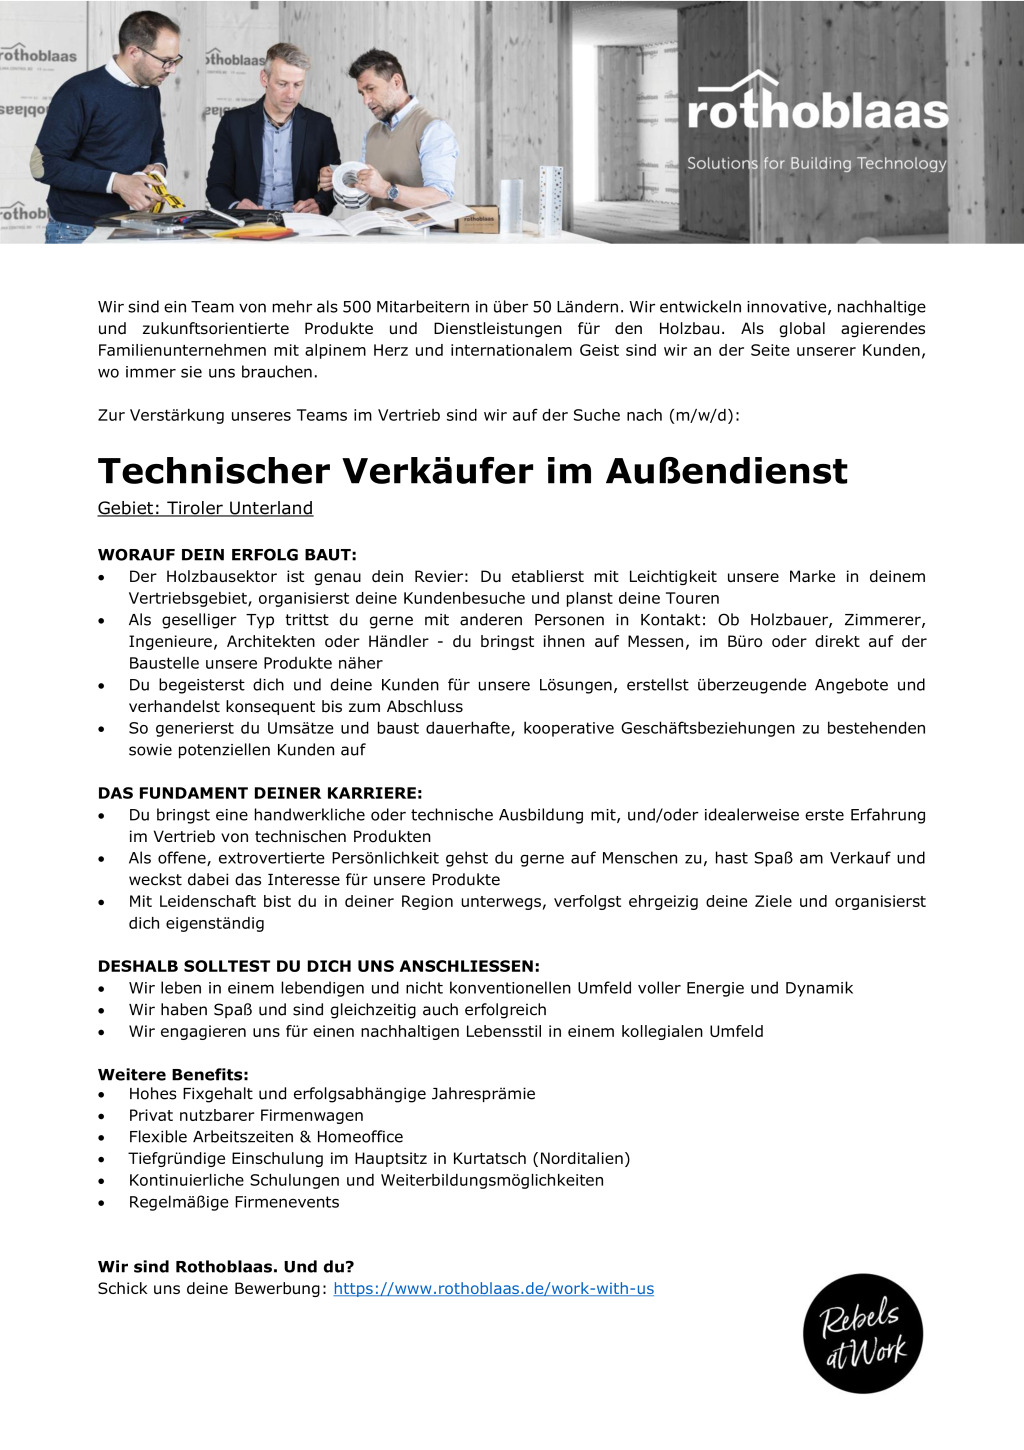 Technischer Verkäufer im Außendienst (m/w/d) - Tiroler Unterland